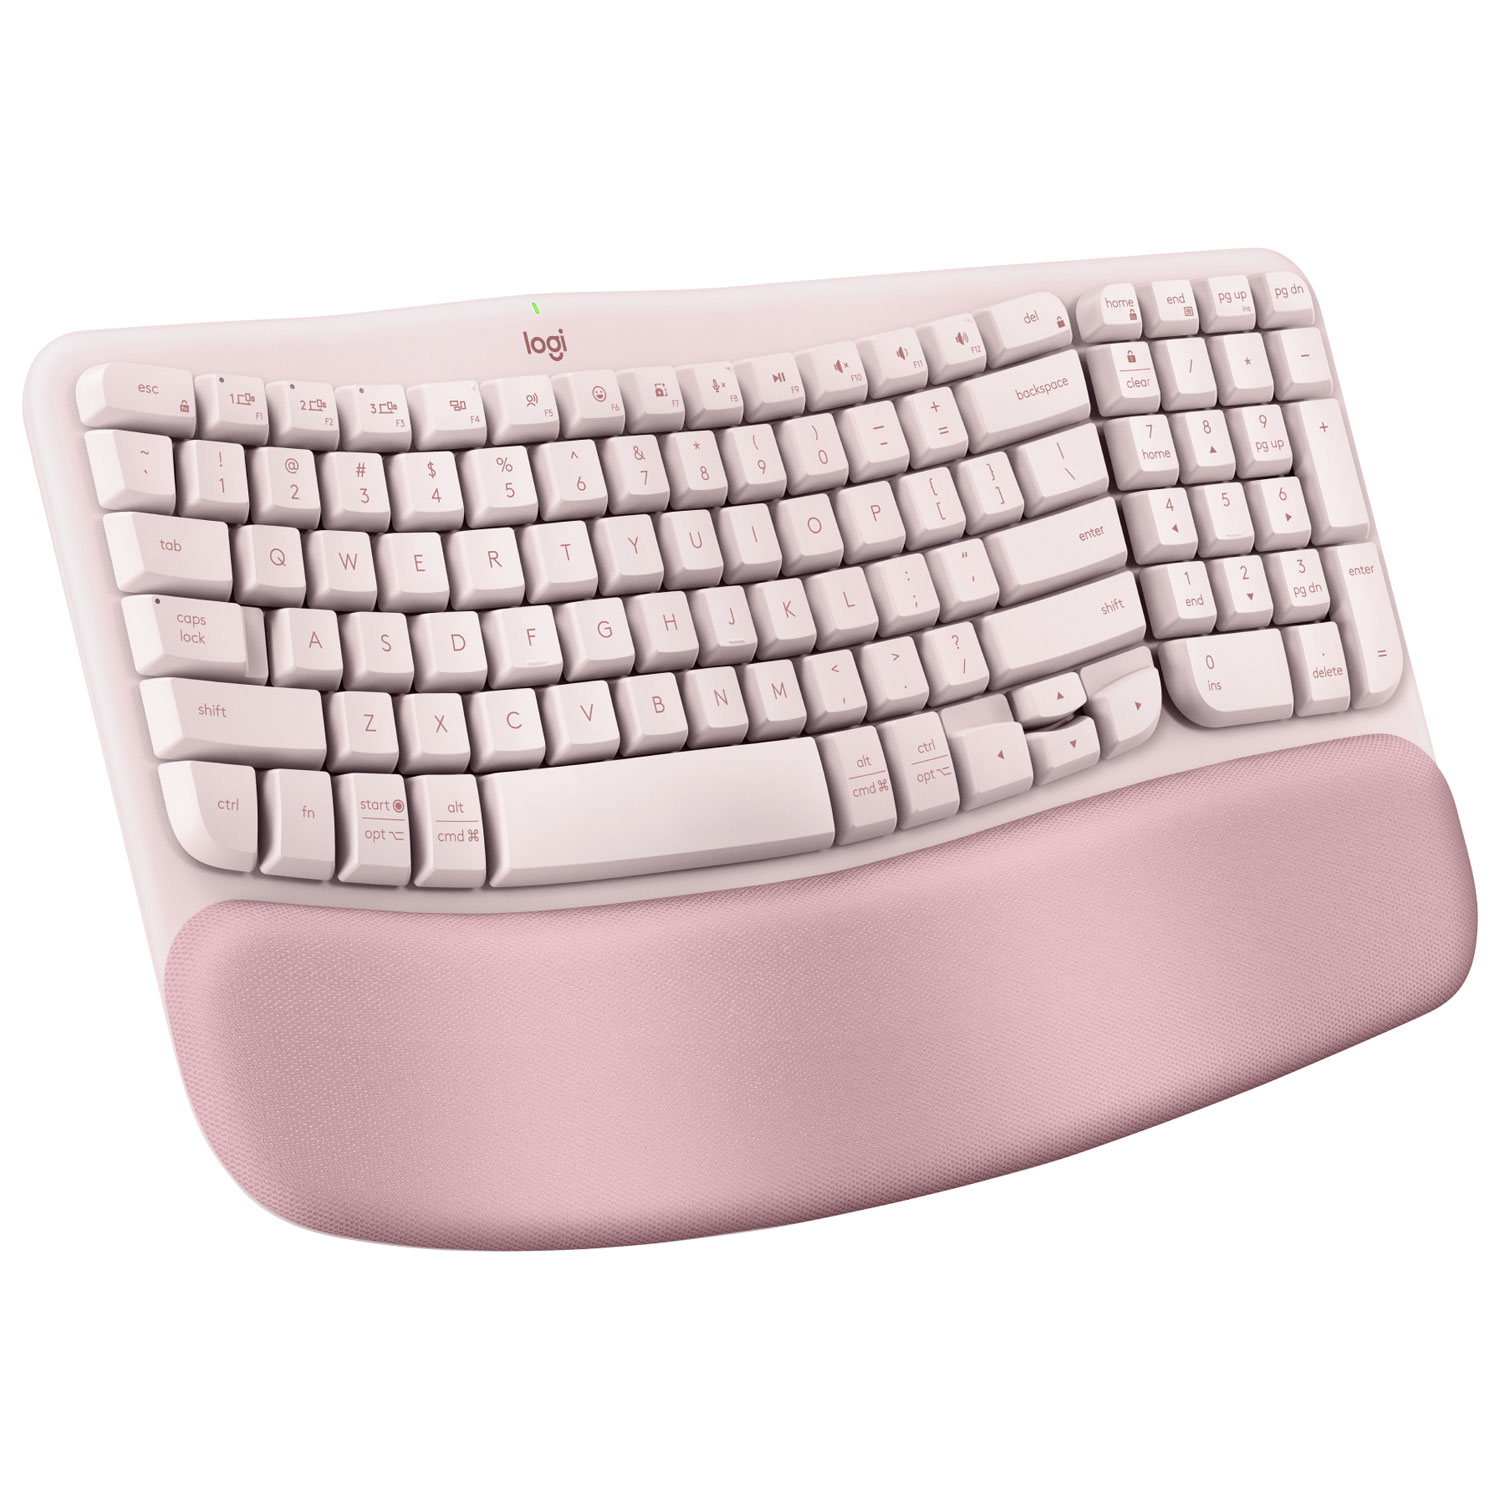 Logitech Wave Keys Wireless Ergonomic Keyboard - Rose